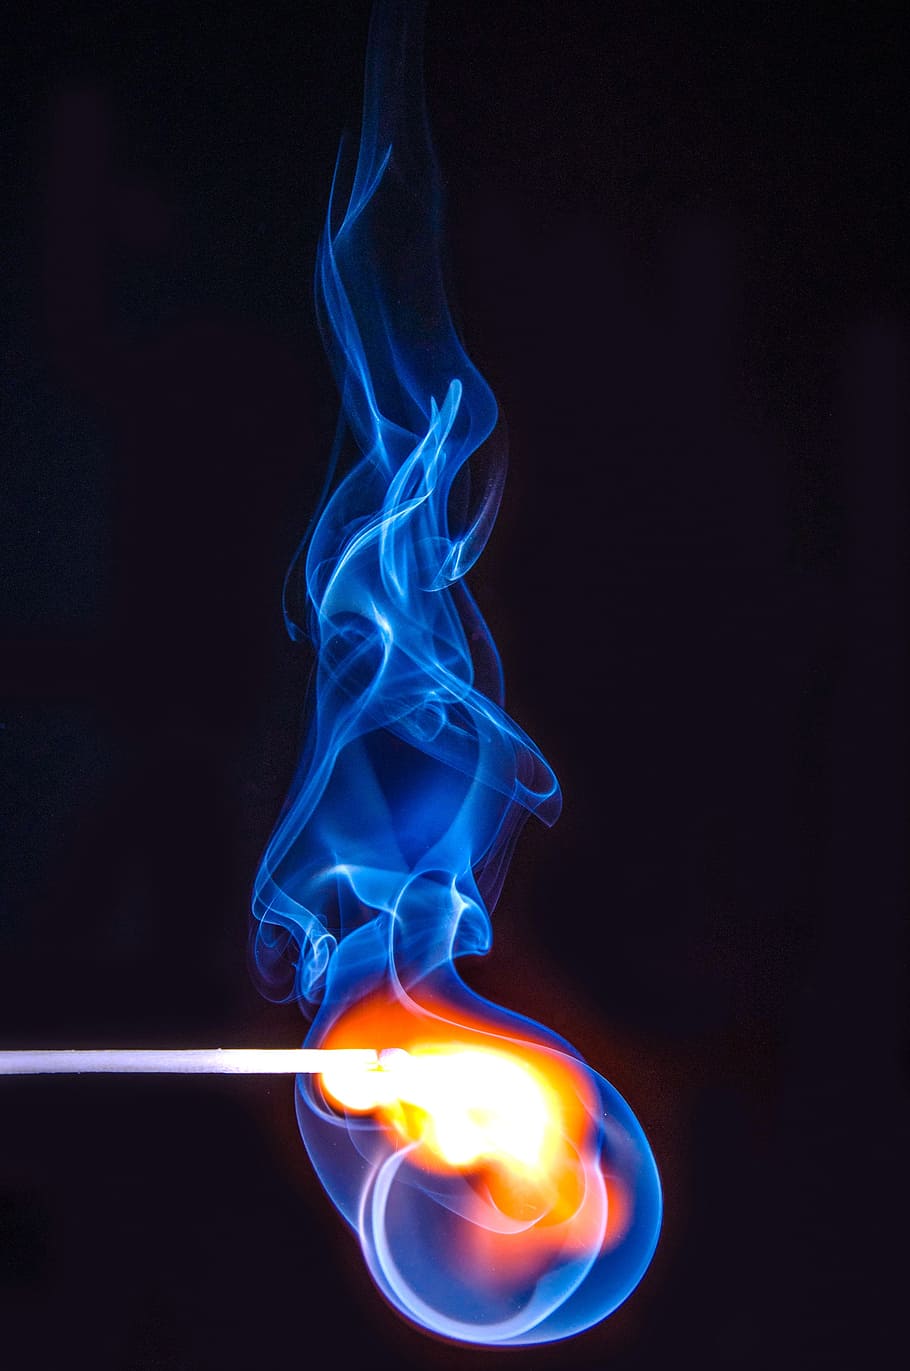 lighten stick match, burn, flame, hot, yellow, red, blue, smoke, HD wallpaper